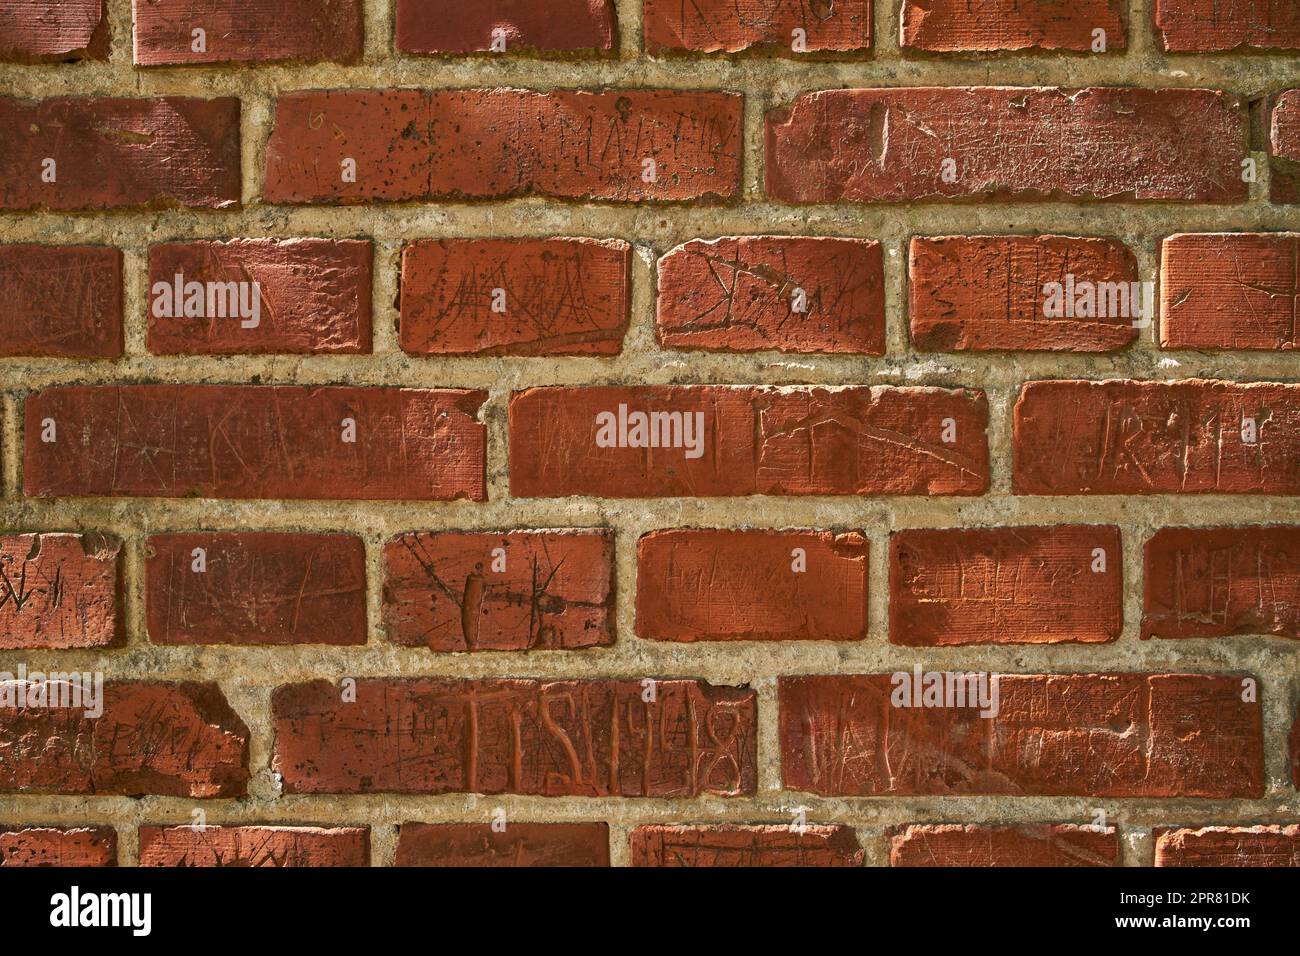 Nahaufnahme einer alten roten Ziegelmauer mit Schnitzereien und Kopierraum. Zoomen Sie auf verschiedene Größen, Formen und Muster von Steinen. Details des Bauwerks mit rauer Oberfläche, skizzierten oder zerkratzten Markierungen Stockfoto